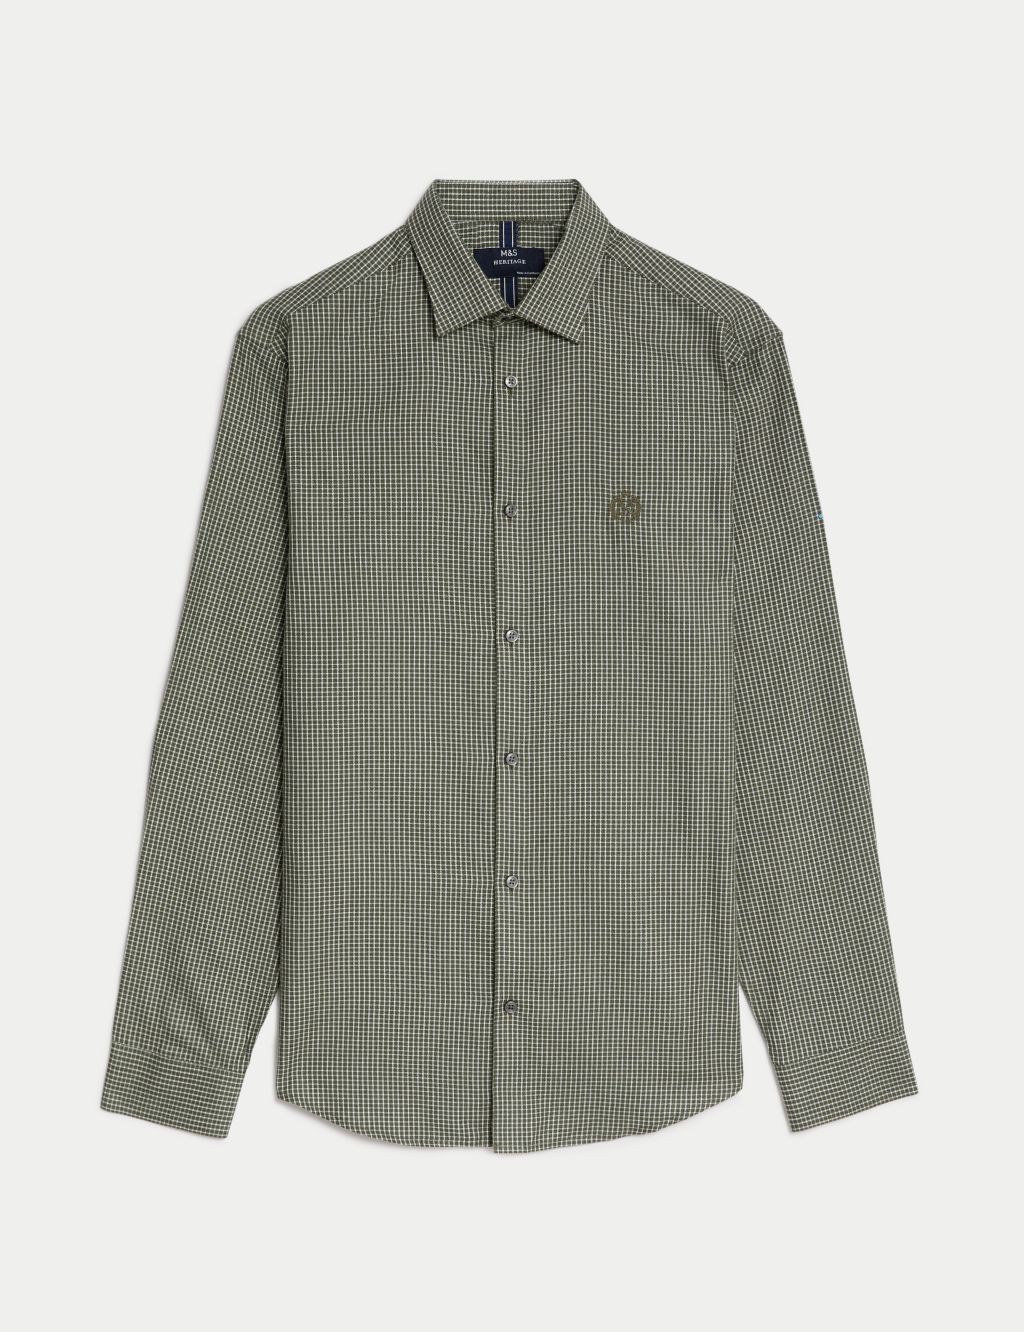 Cotton Blend Brushed Flannel Shirt image 2